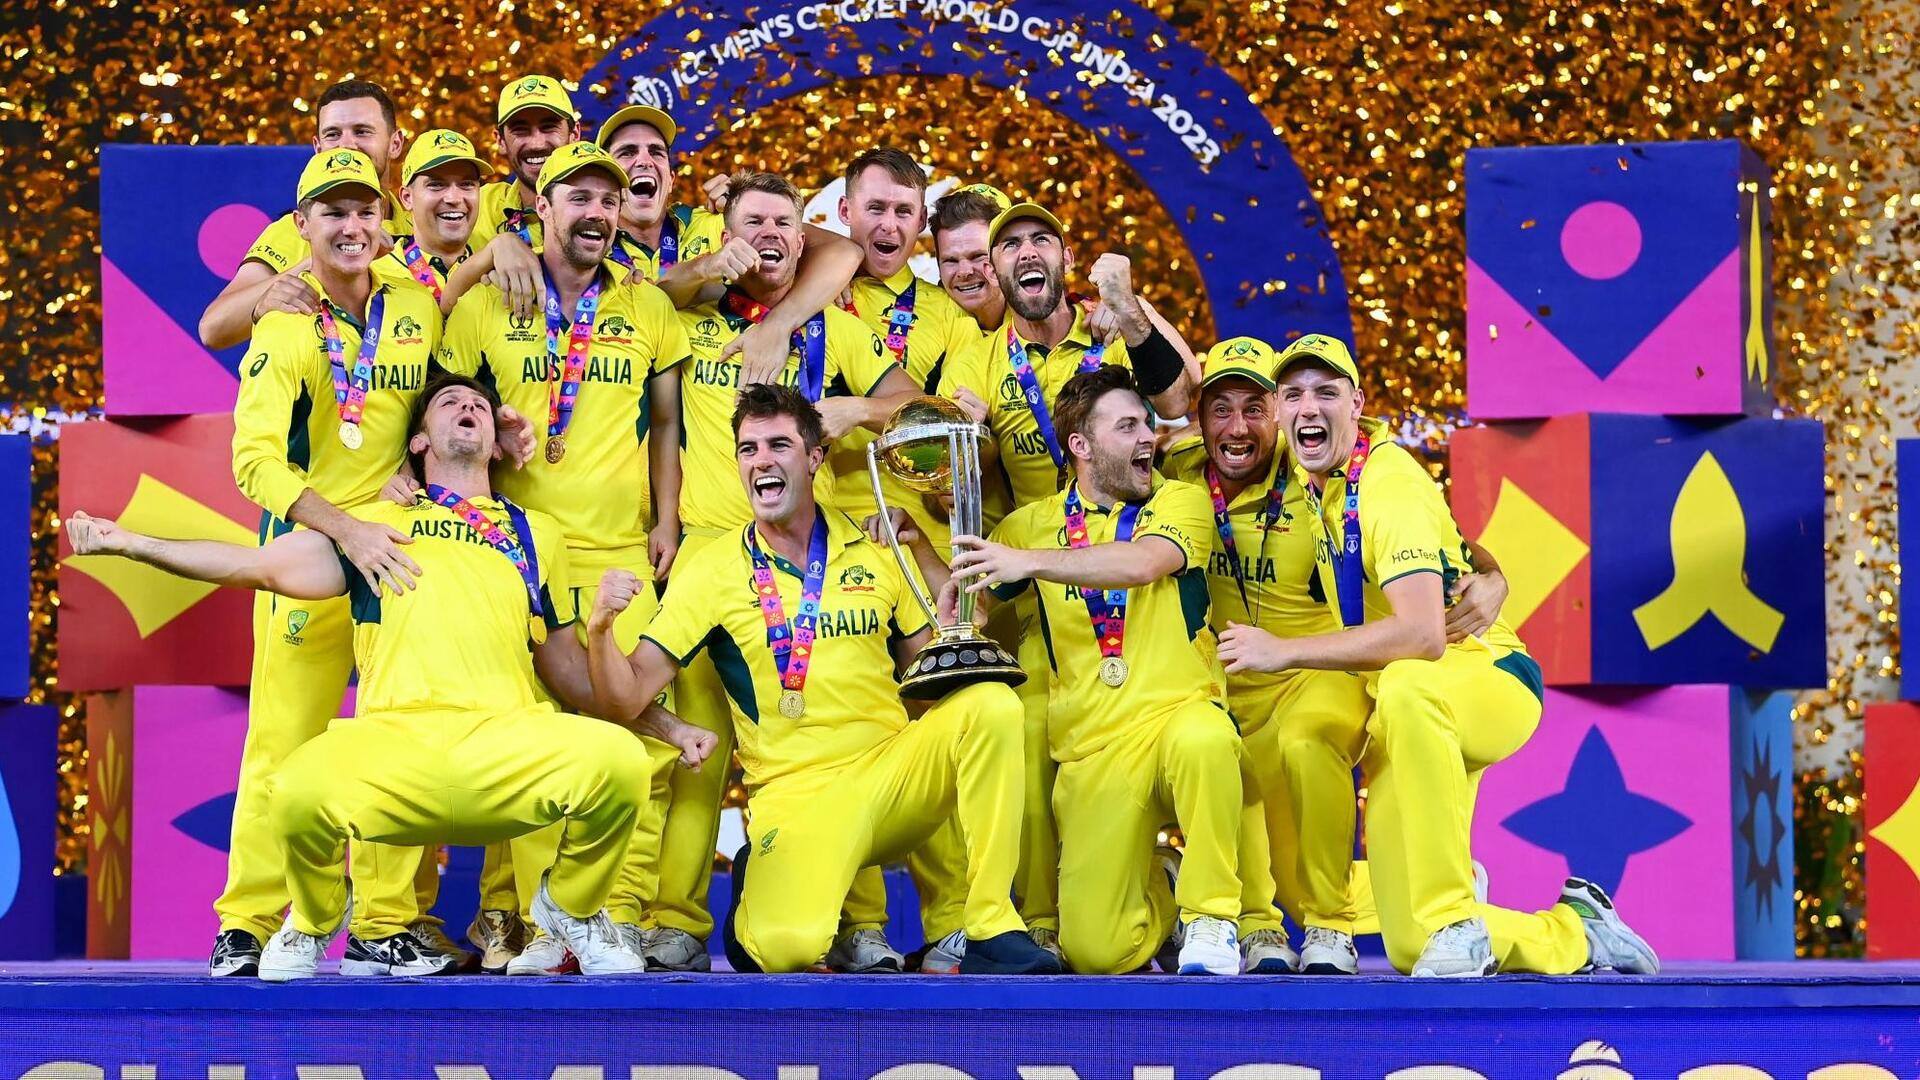 ऑस्ट्रेलिया क्रिकेट टीम की इस साल की प्रमुख उपलब्धियों पर एक नजर